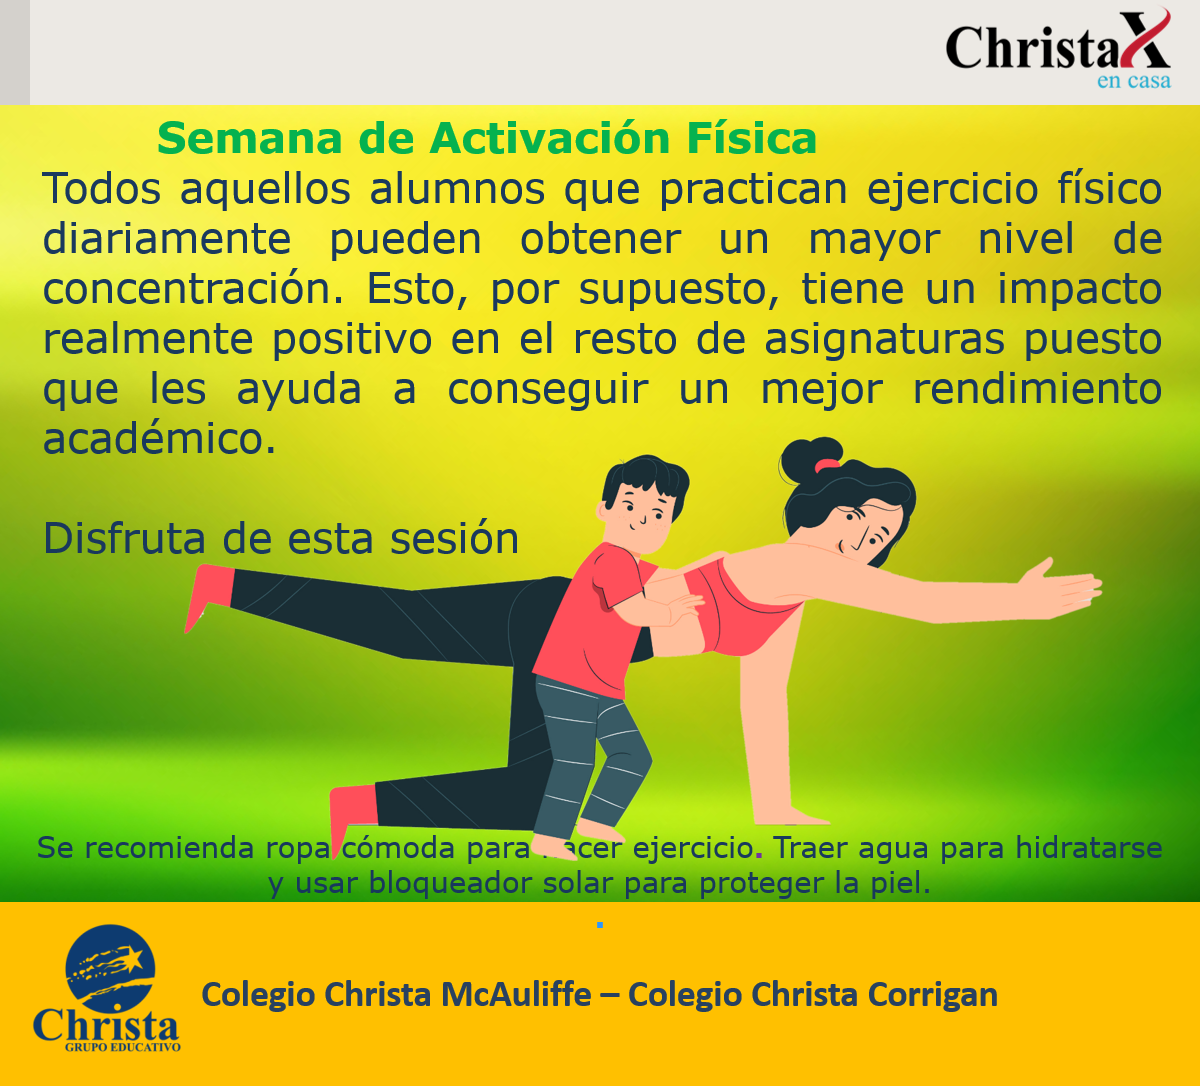 Christa STEAM - Semana de Activación Física 03 2023 GE